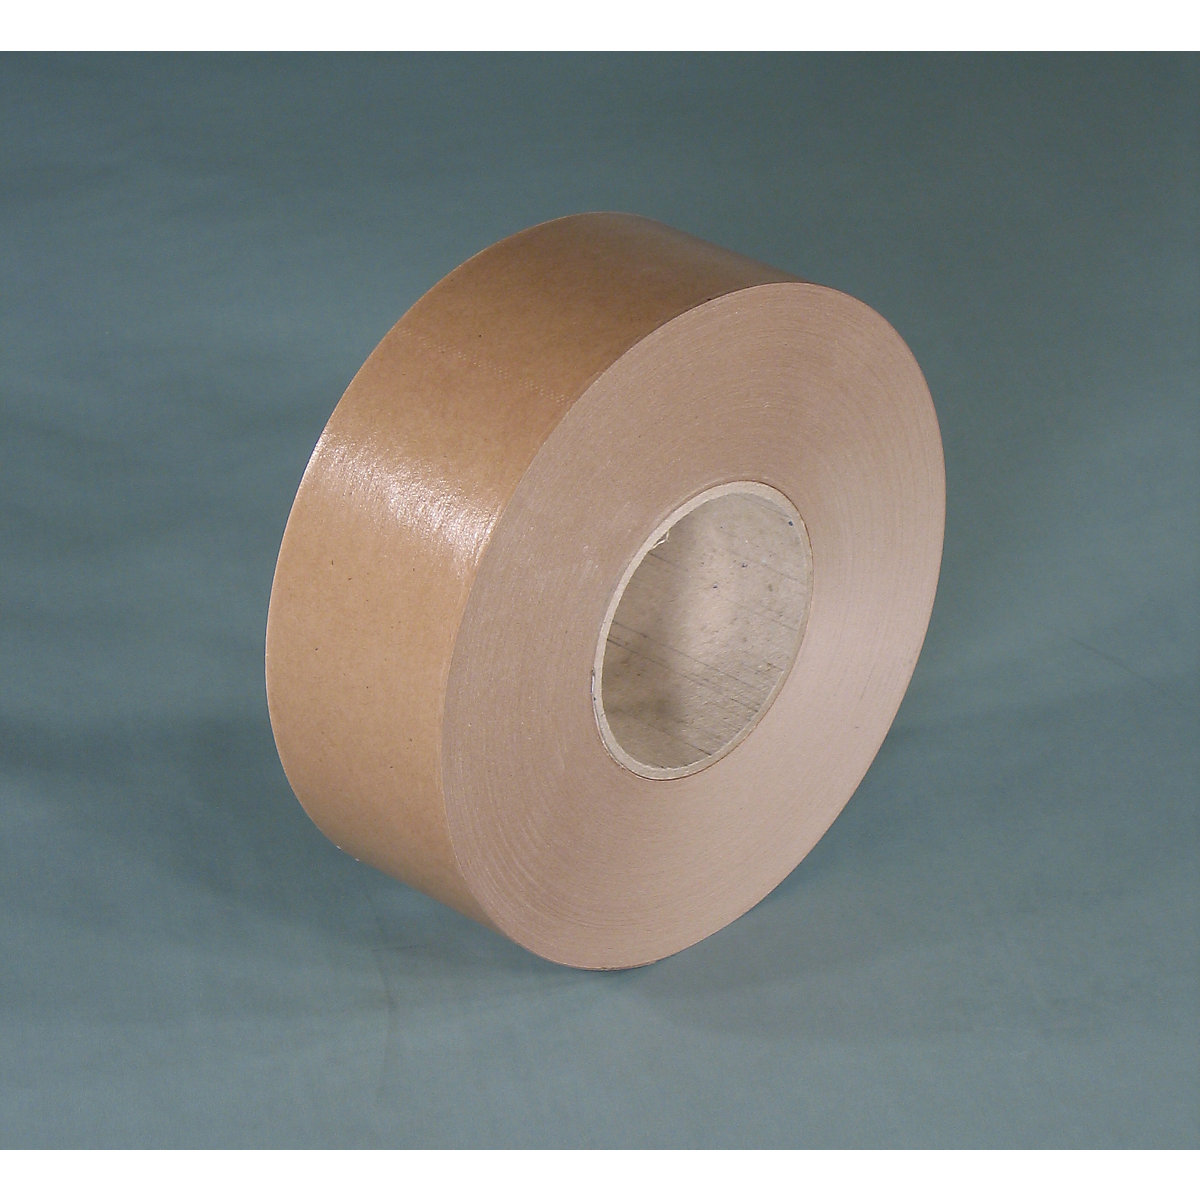 Gummed tape – eurokraft basic, basic model, pack of 12 rolls, brown, tape width 60 mm-4